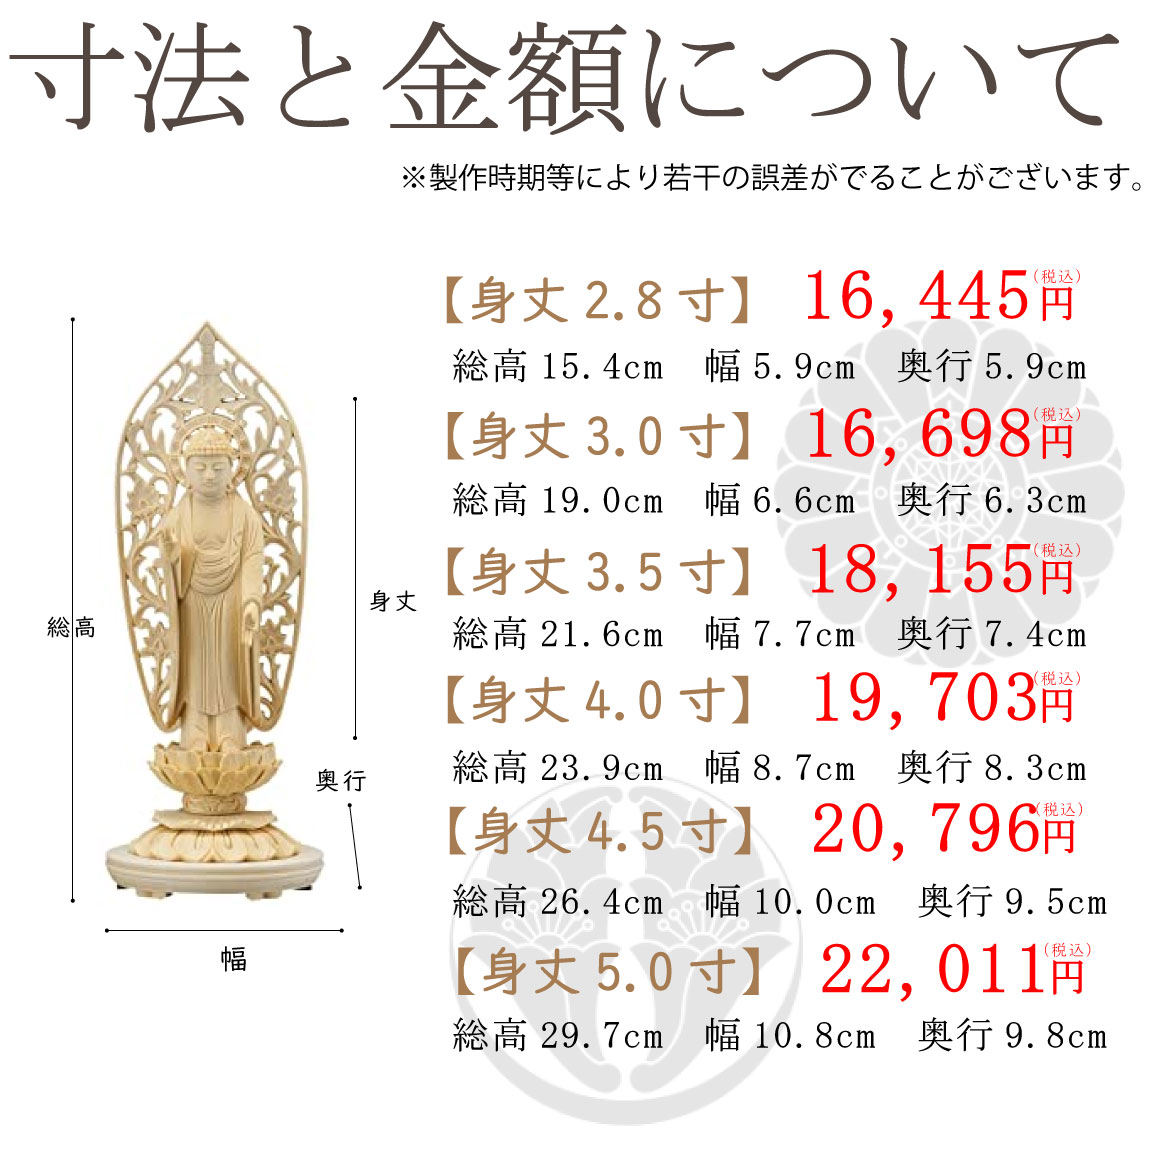 浄土宗・天台宗の仏像（丸台座）の寸法と価格